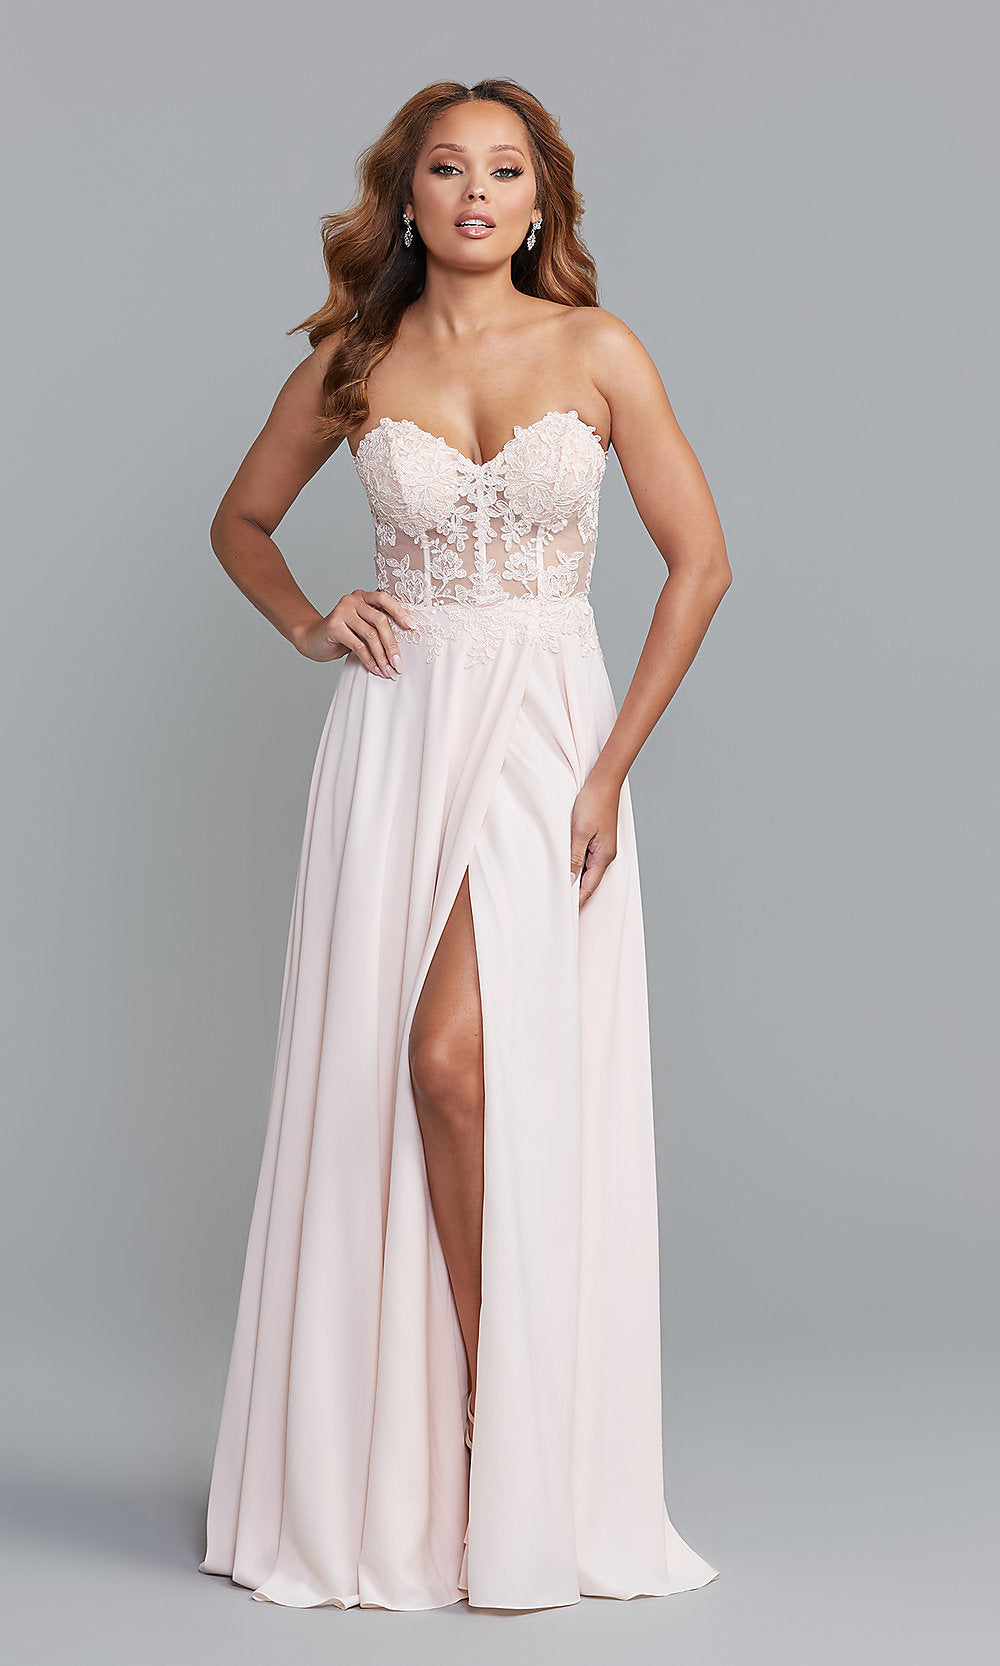  Strapless Sweetheart Sheer-Bodice Long Prom Dress